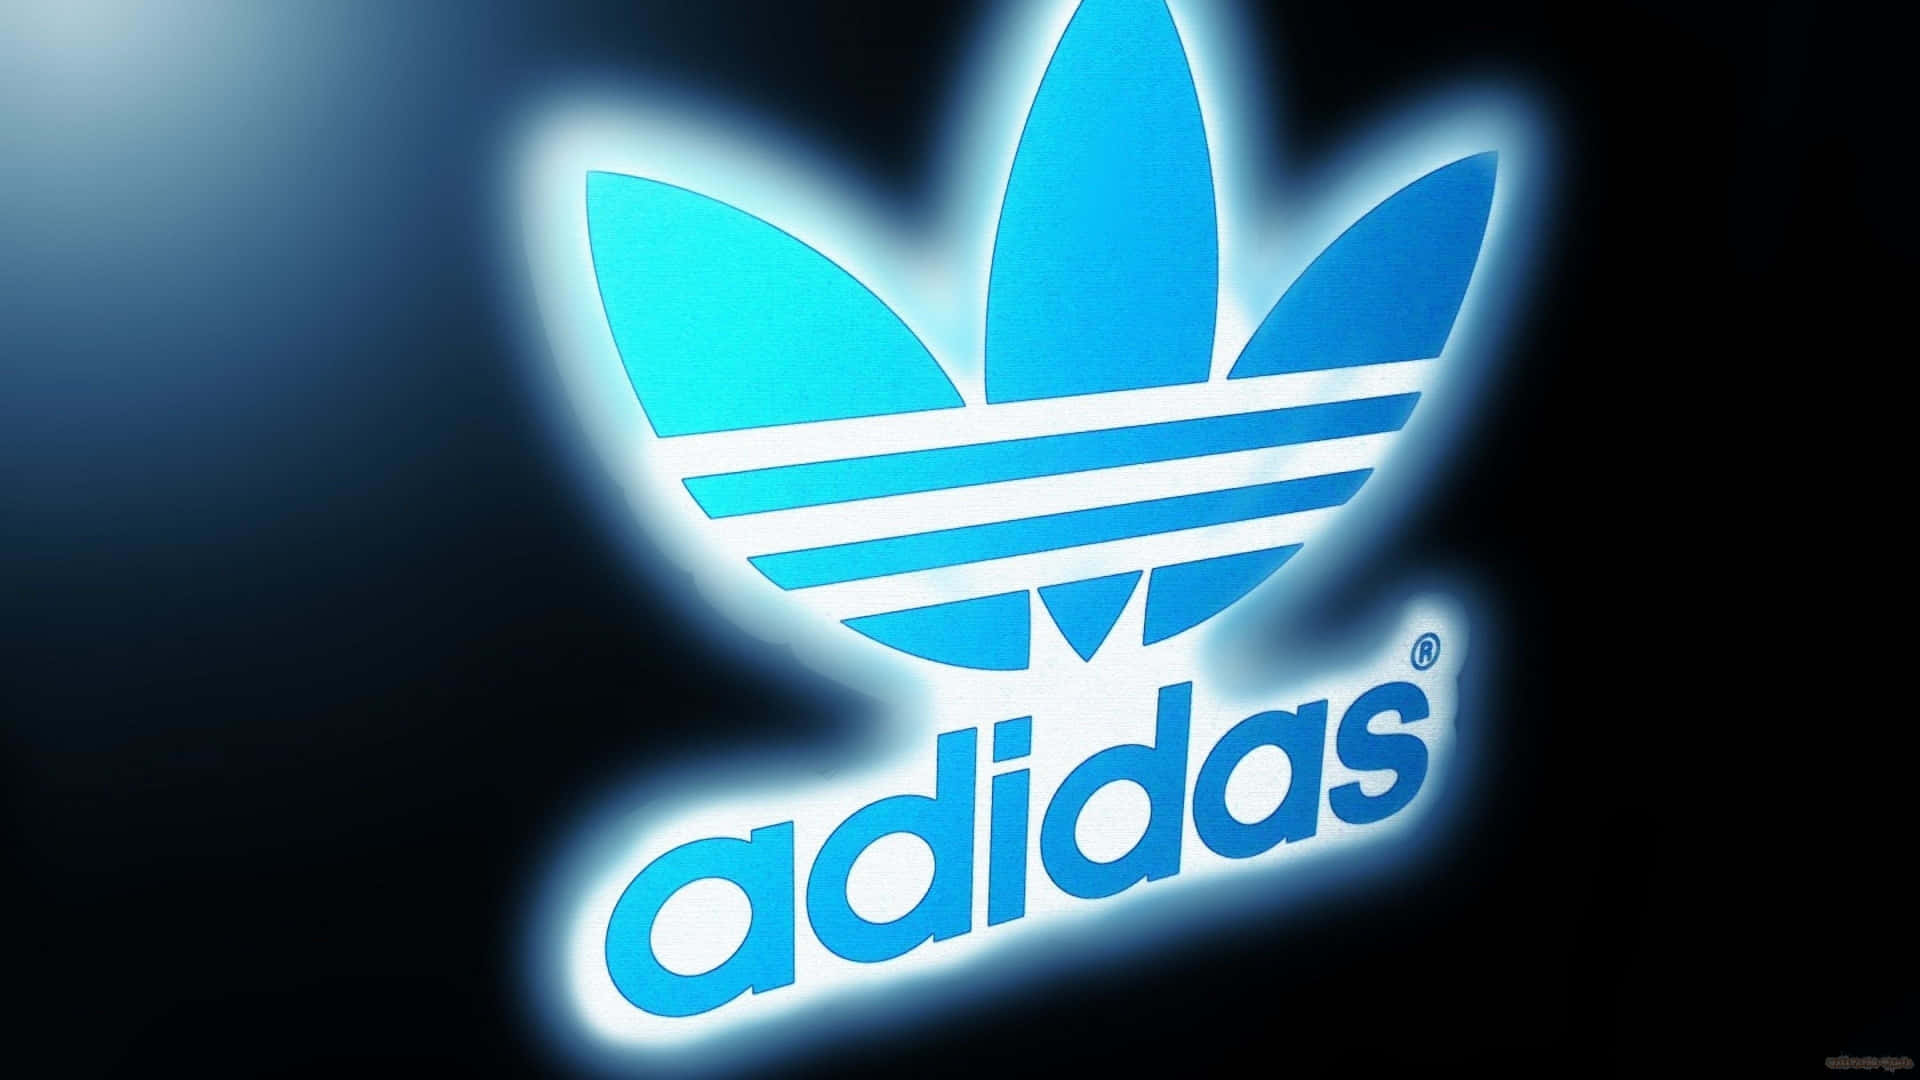 Adidas Background